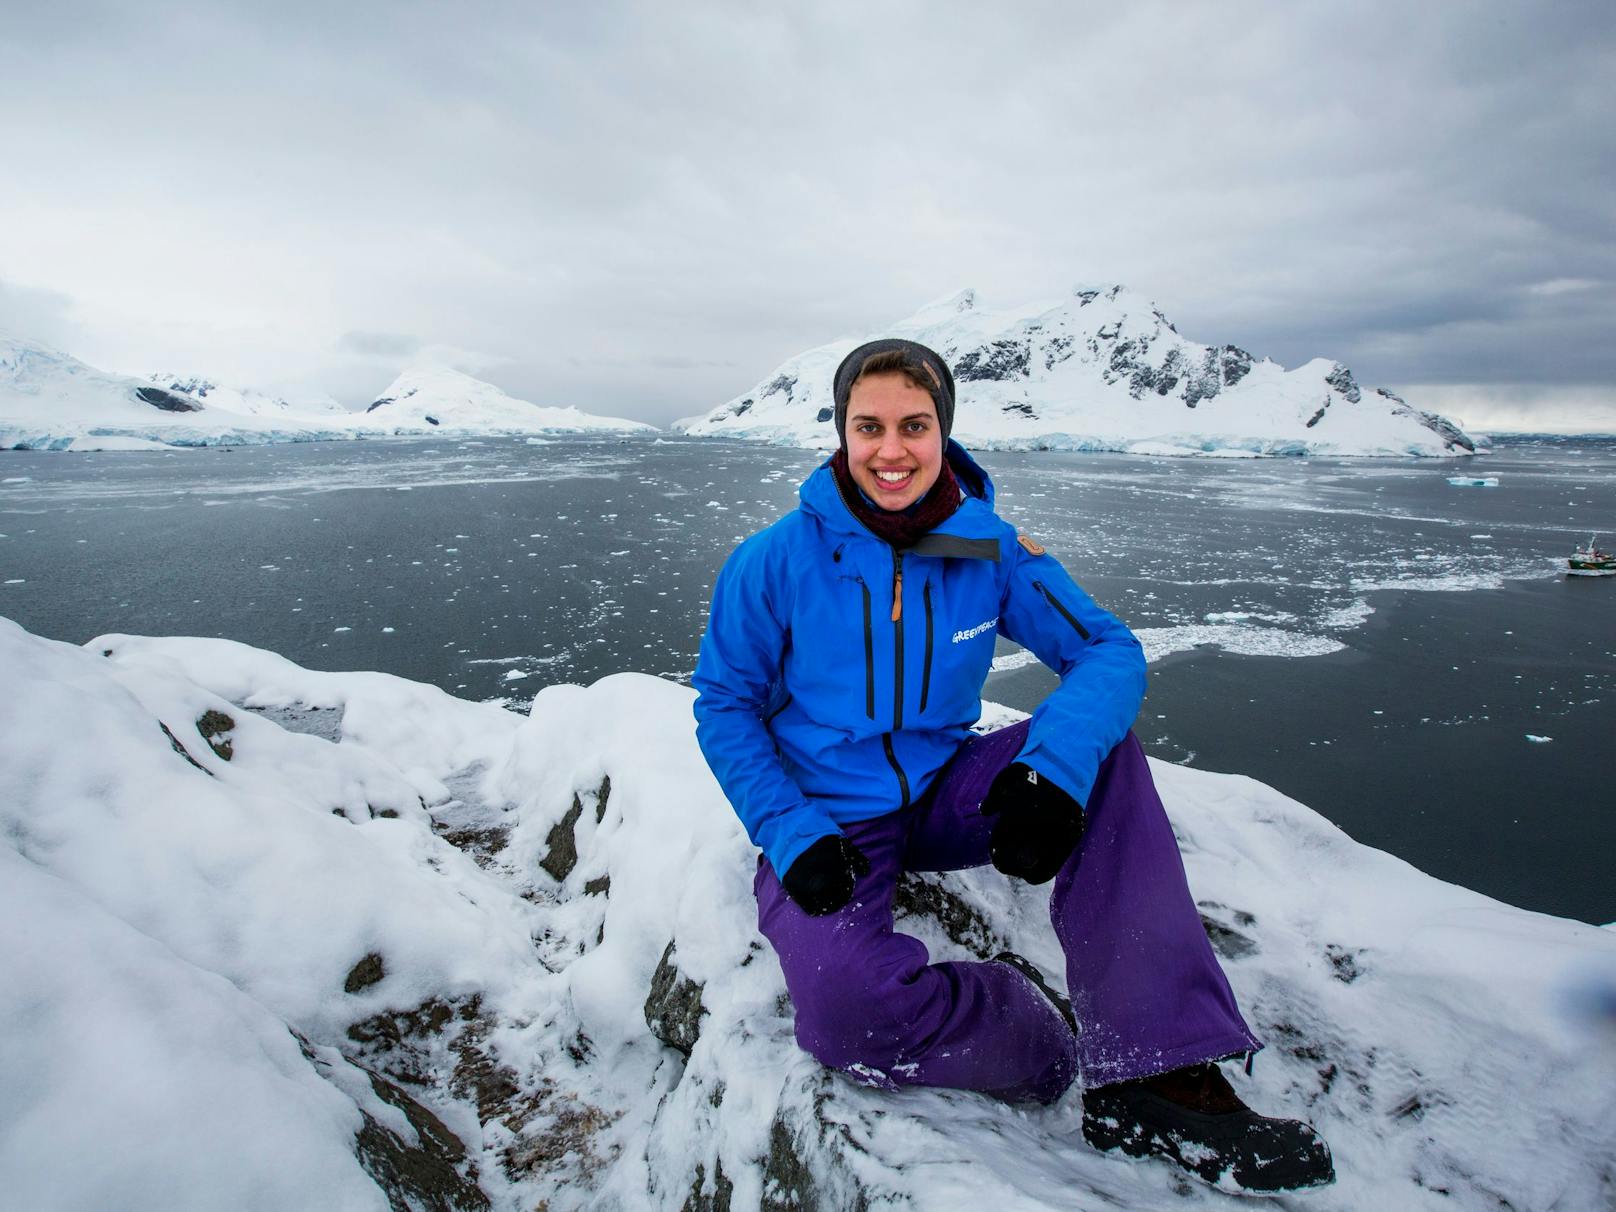 Paradise Bay in der Antarktis. Sarah Scharf erkundet gemeinsam mit einem internationalen Greenpeace-Team die einzigartige Natur und Tierwelt der Antarktis.